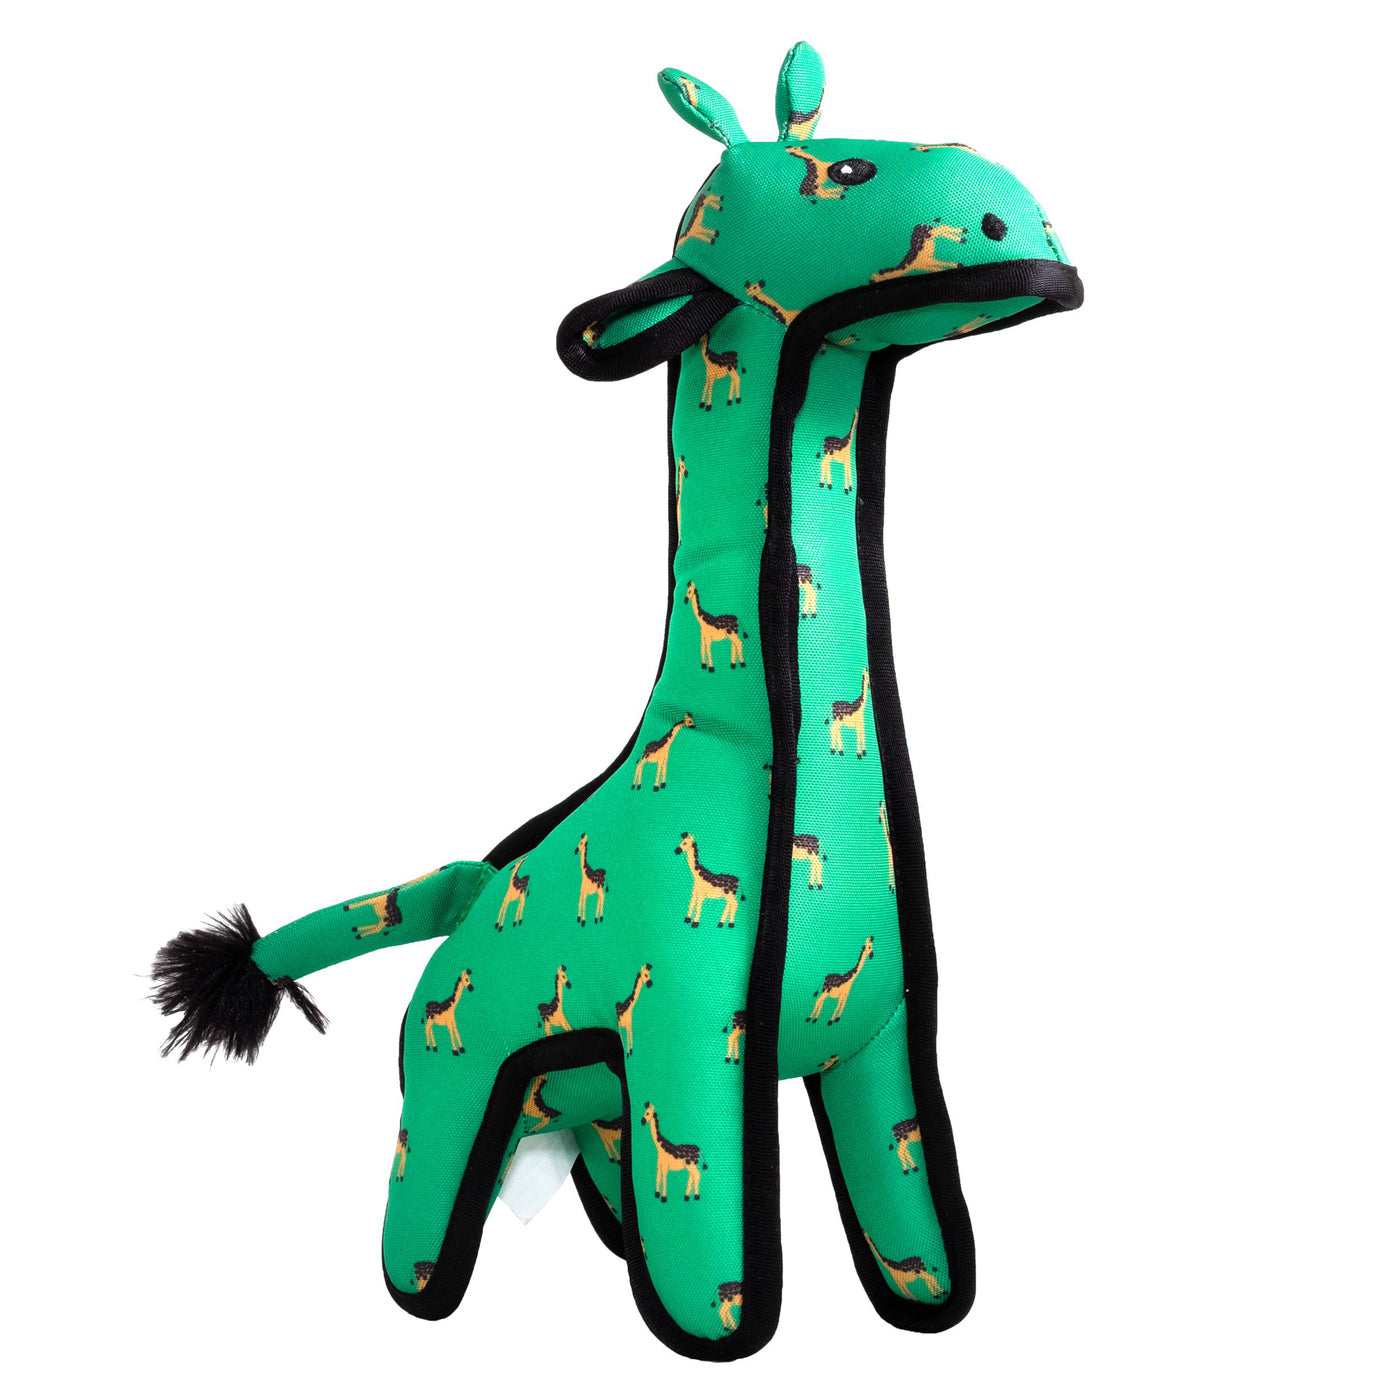 The Worthy Dog Geoffrey Giraffe Large